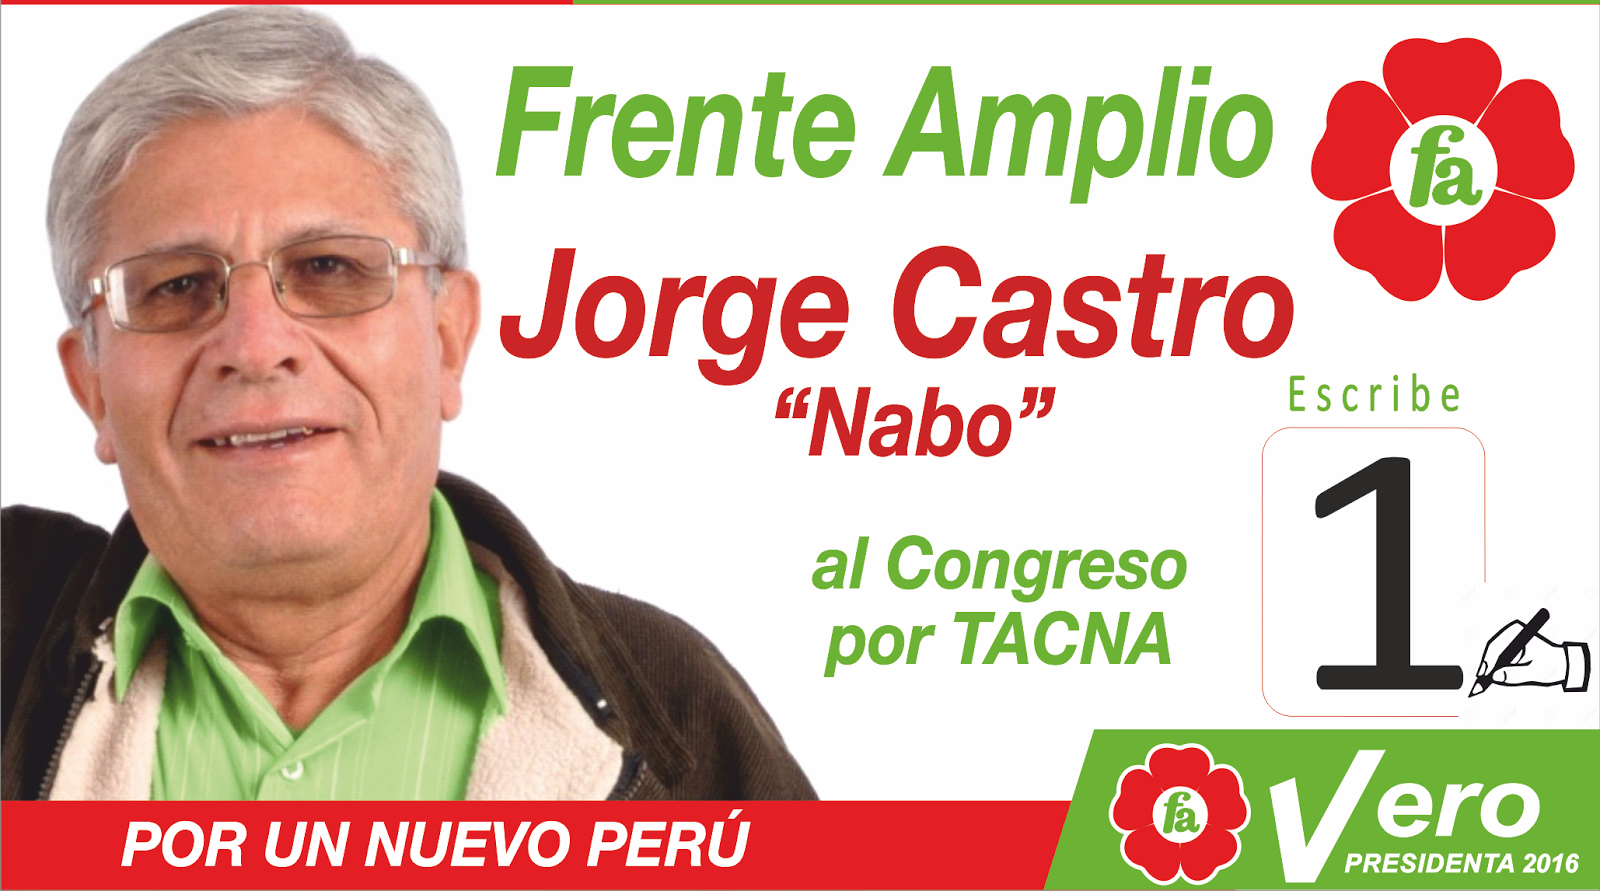 Jorge Castro al Congreso por el Frente Amplio, con el número 1